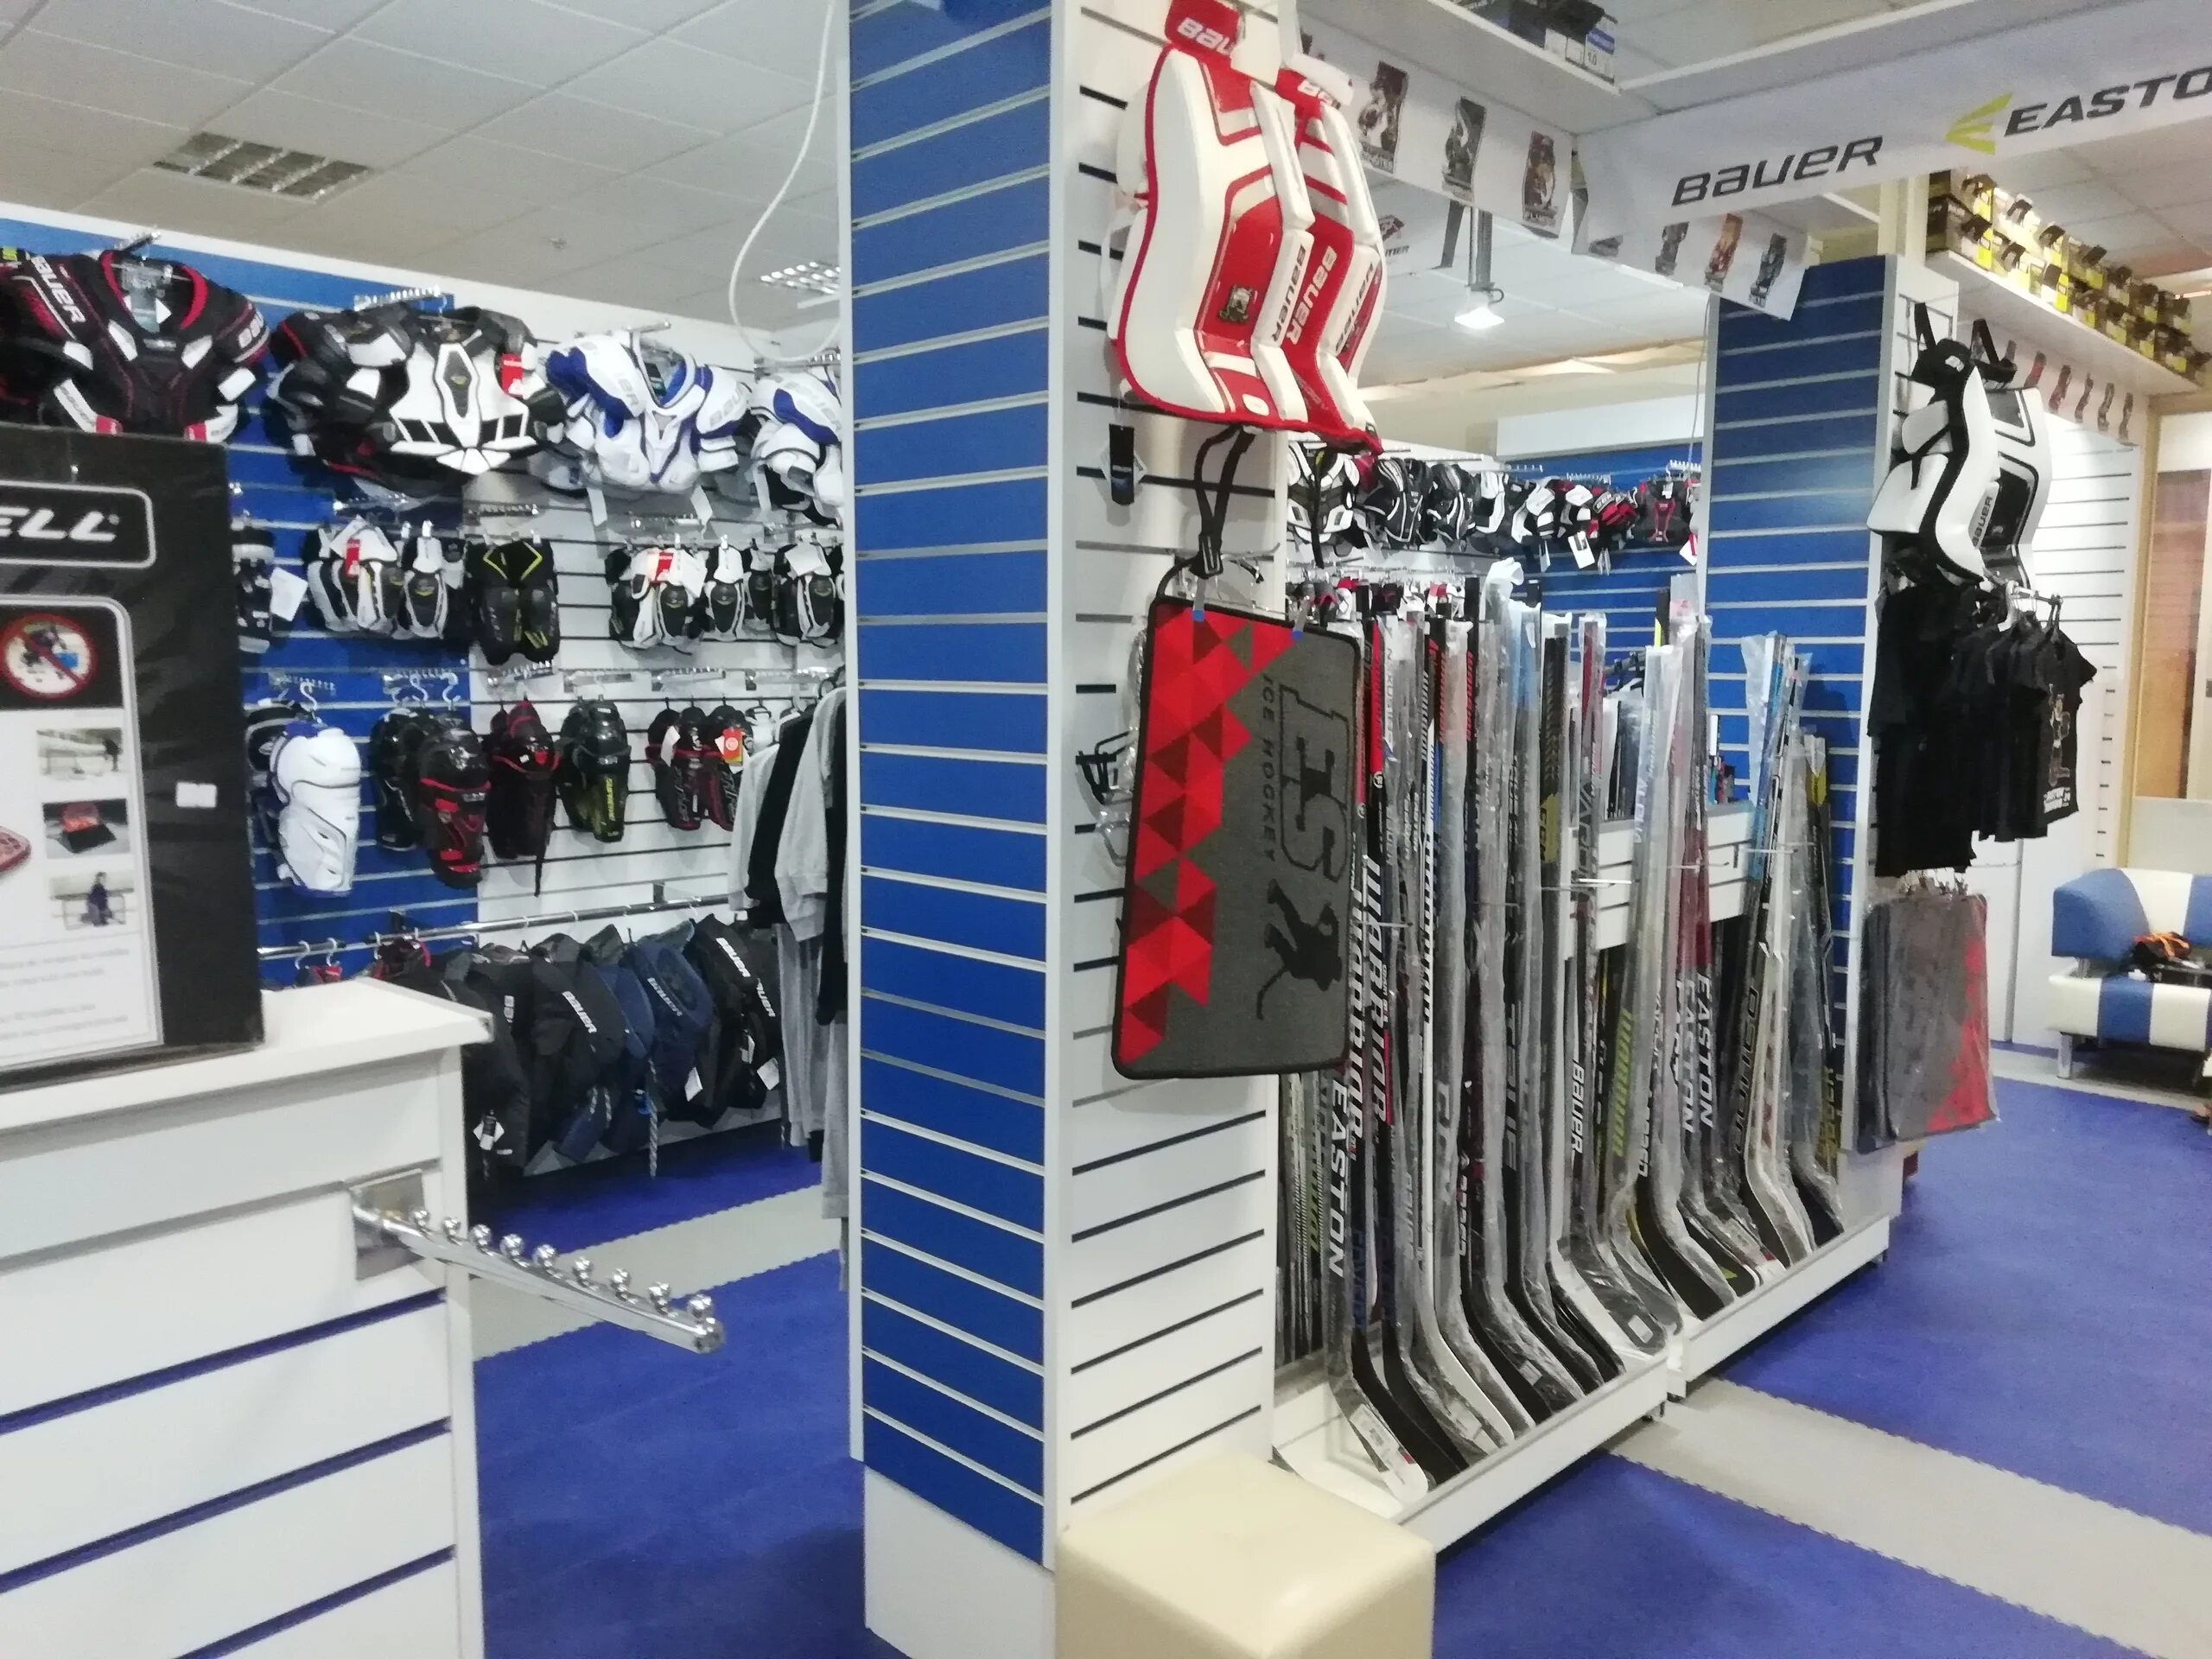 Хоккейные сайты магазинов. Магазин хоккейной экипировки. Магазин спортивного инвентаря для хоккея. Хоккеист в магазине. Оборудование для хоккейного магазина.